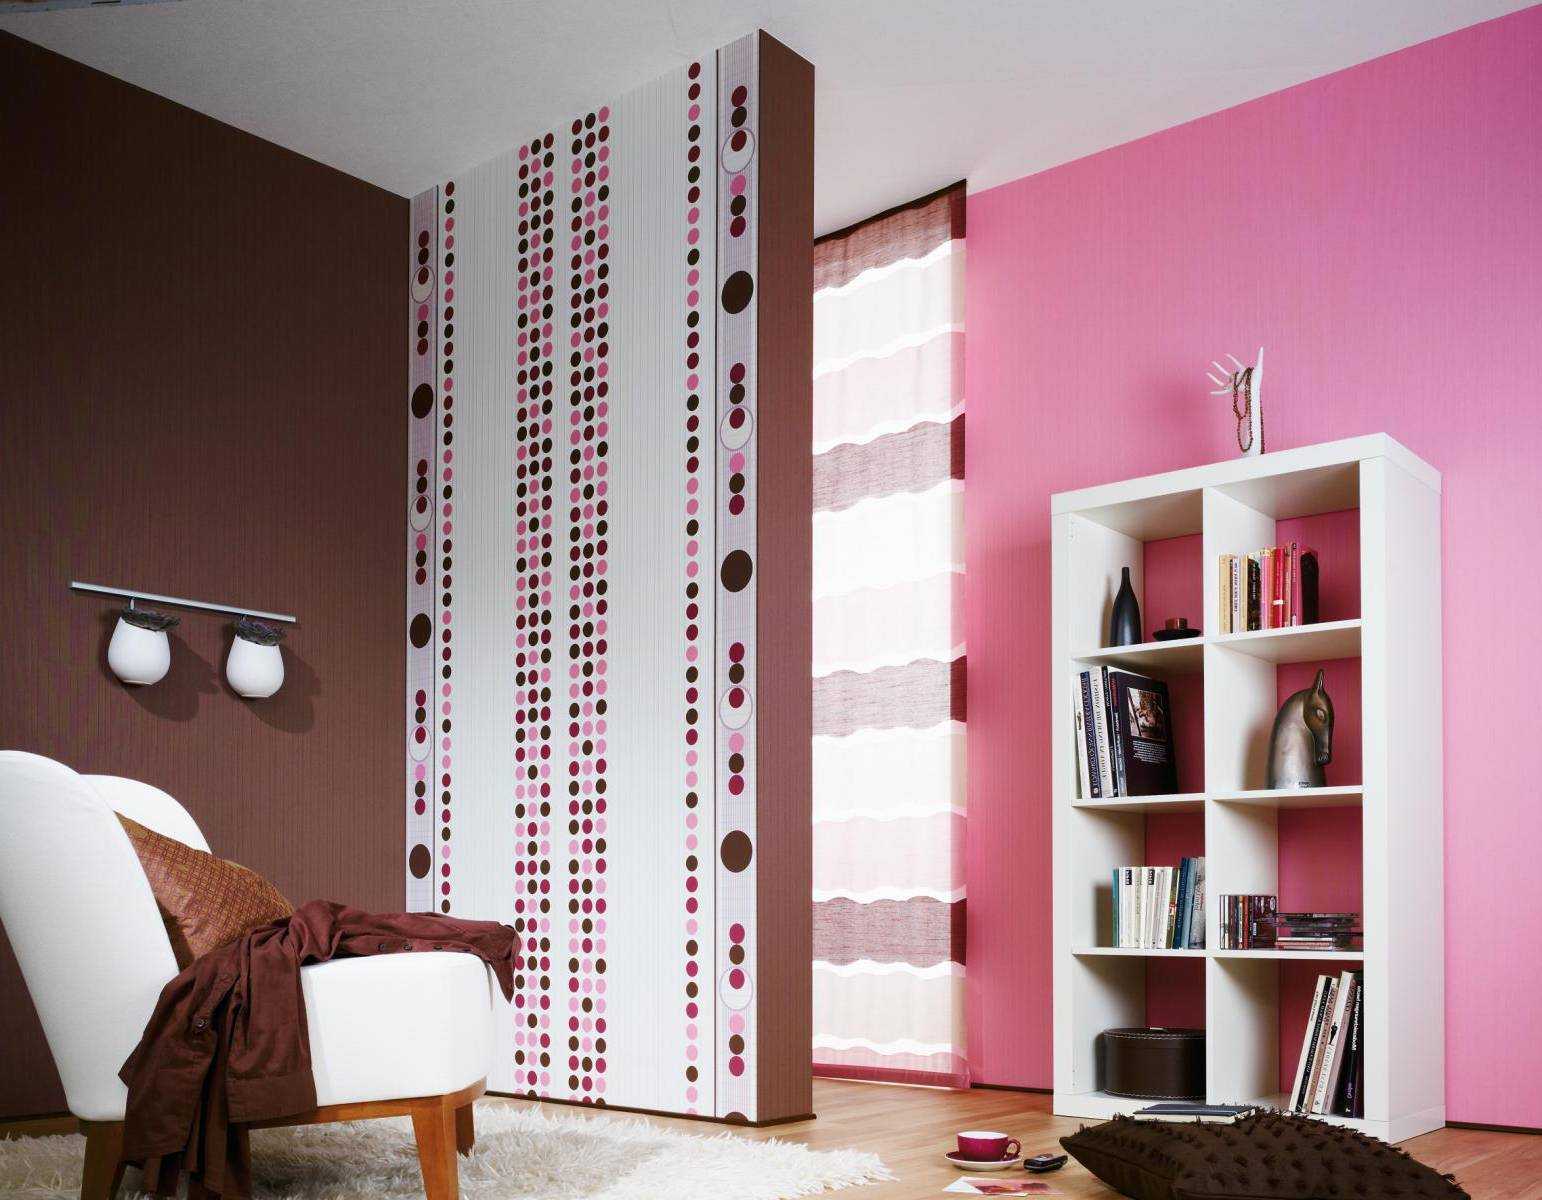 مزيج من اللون الوردي الفاتح على طراز الغرفة مع ألوان أخرى